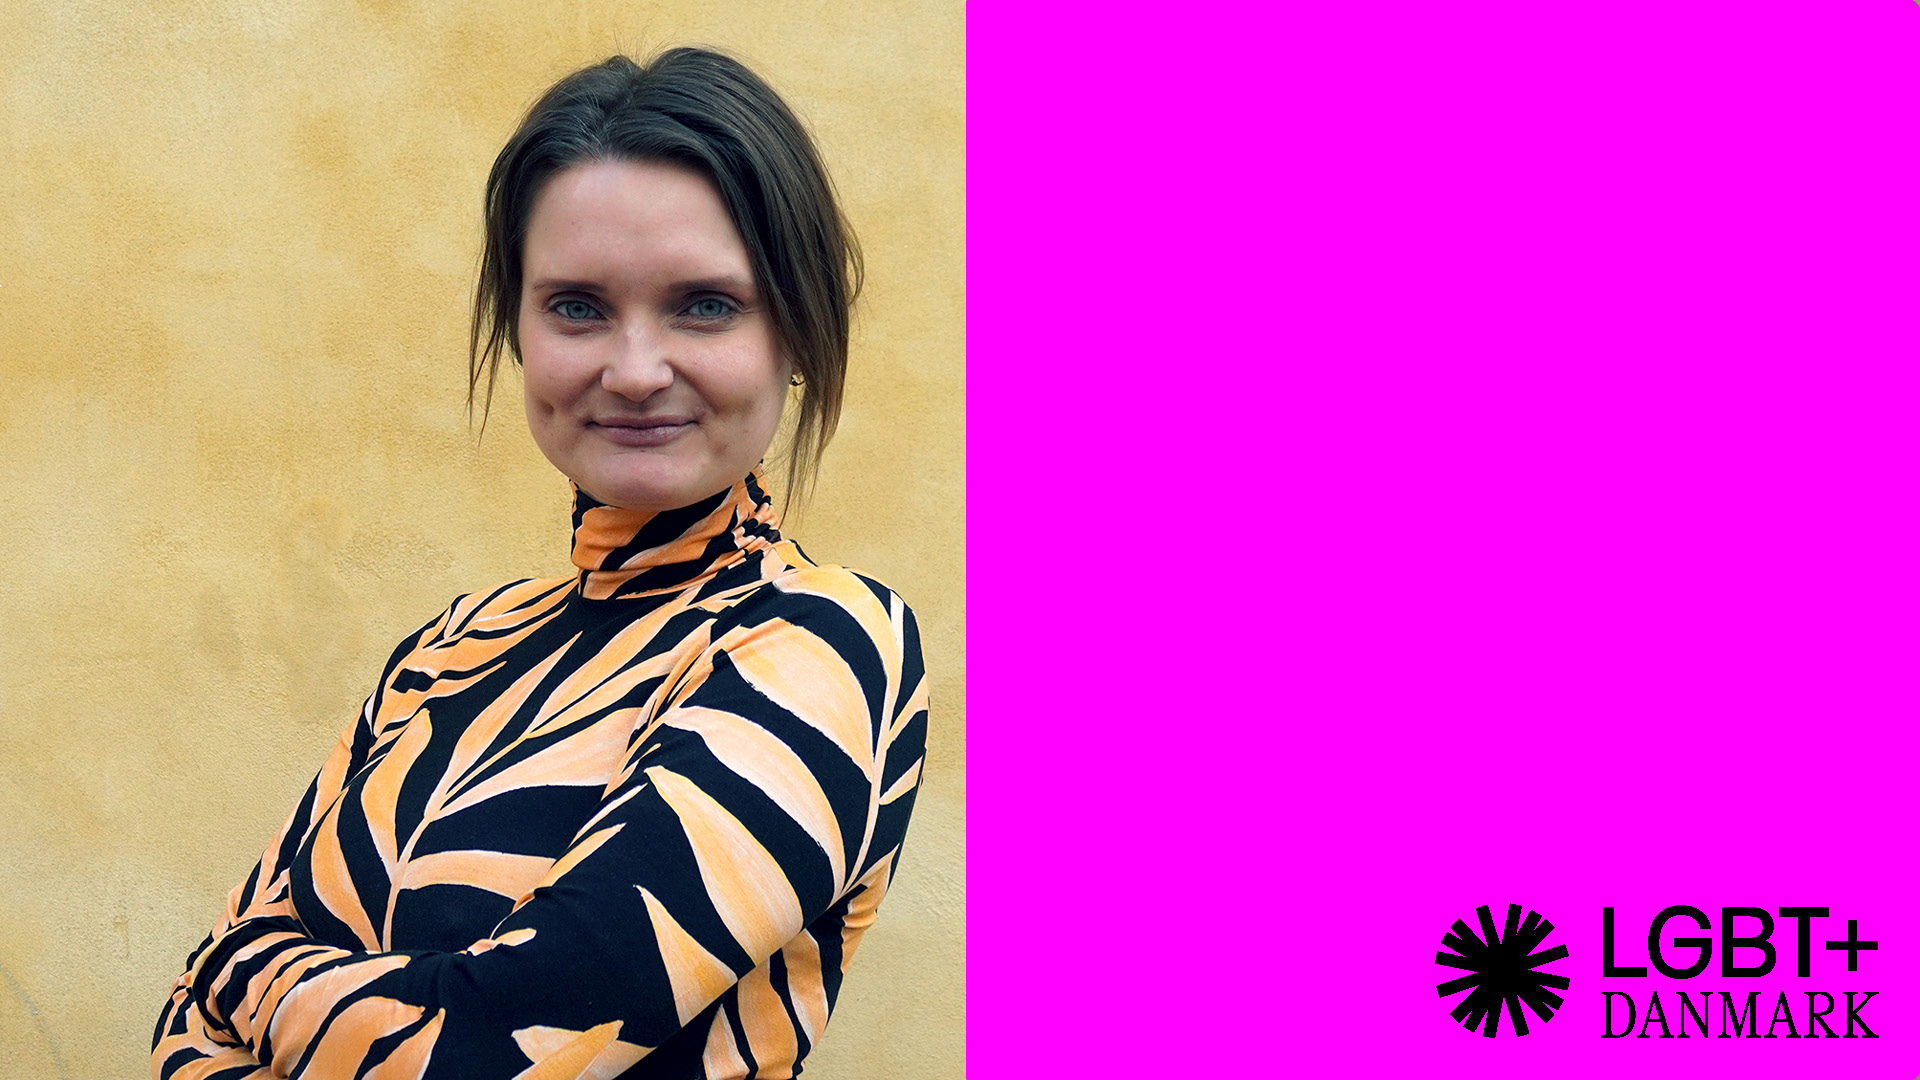 Foto af Mie Birk Jensen ved siden af pink firkant med LGBT+ Danmarks logo